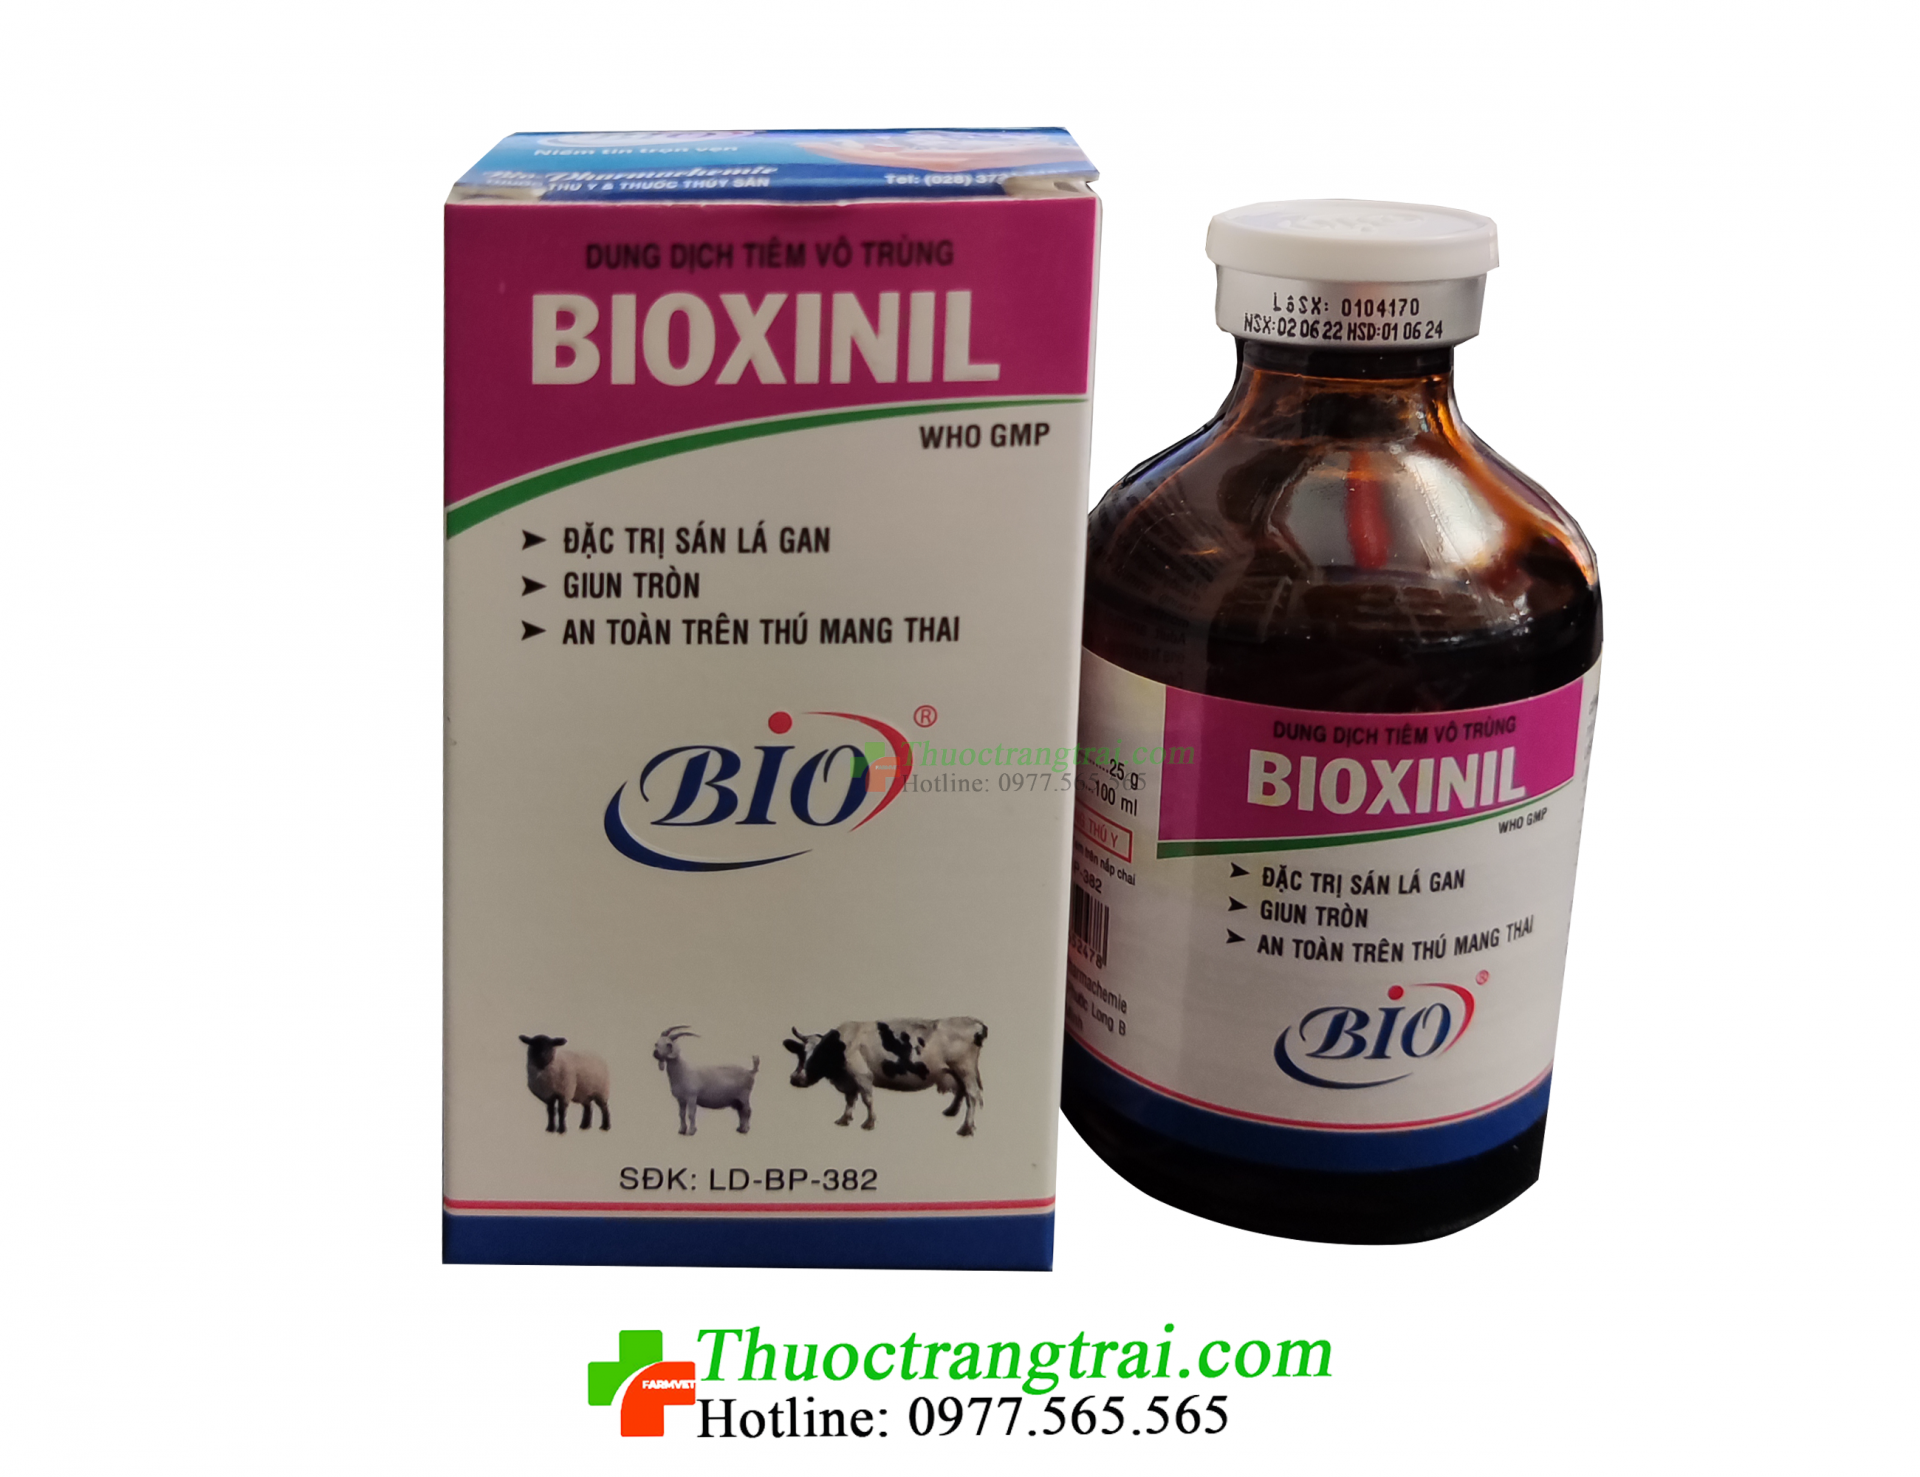 bioxinil-1-1688628064.png